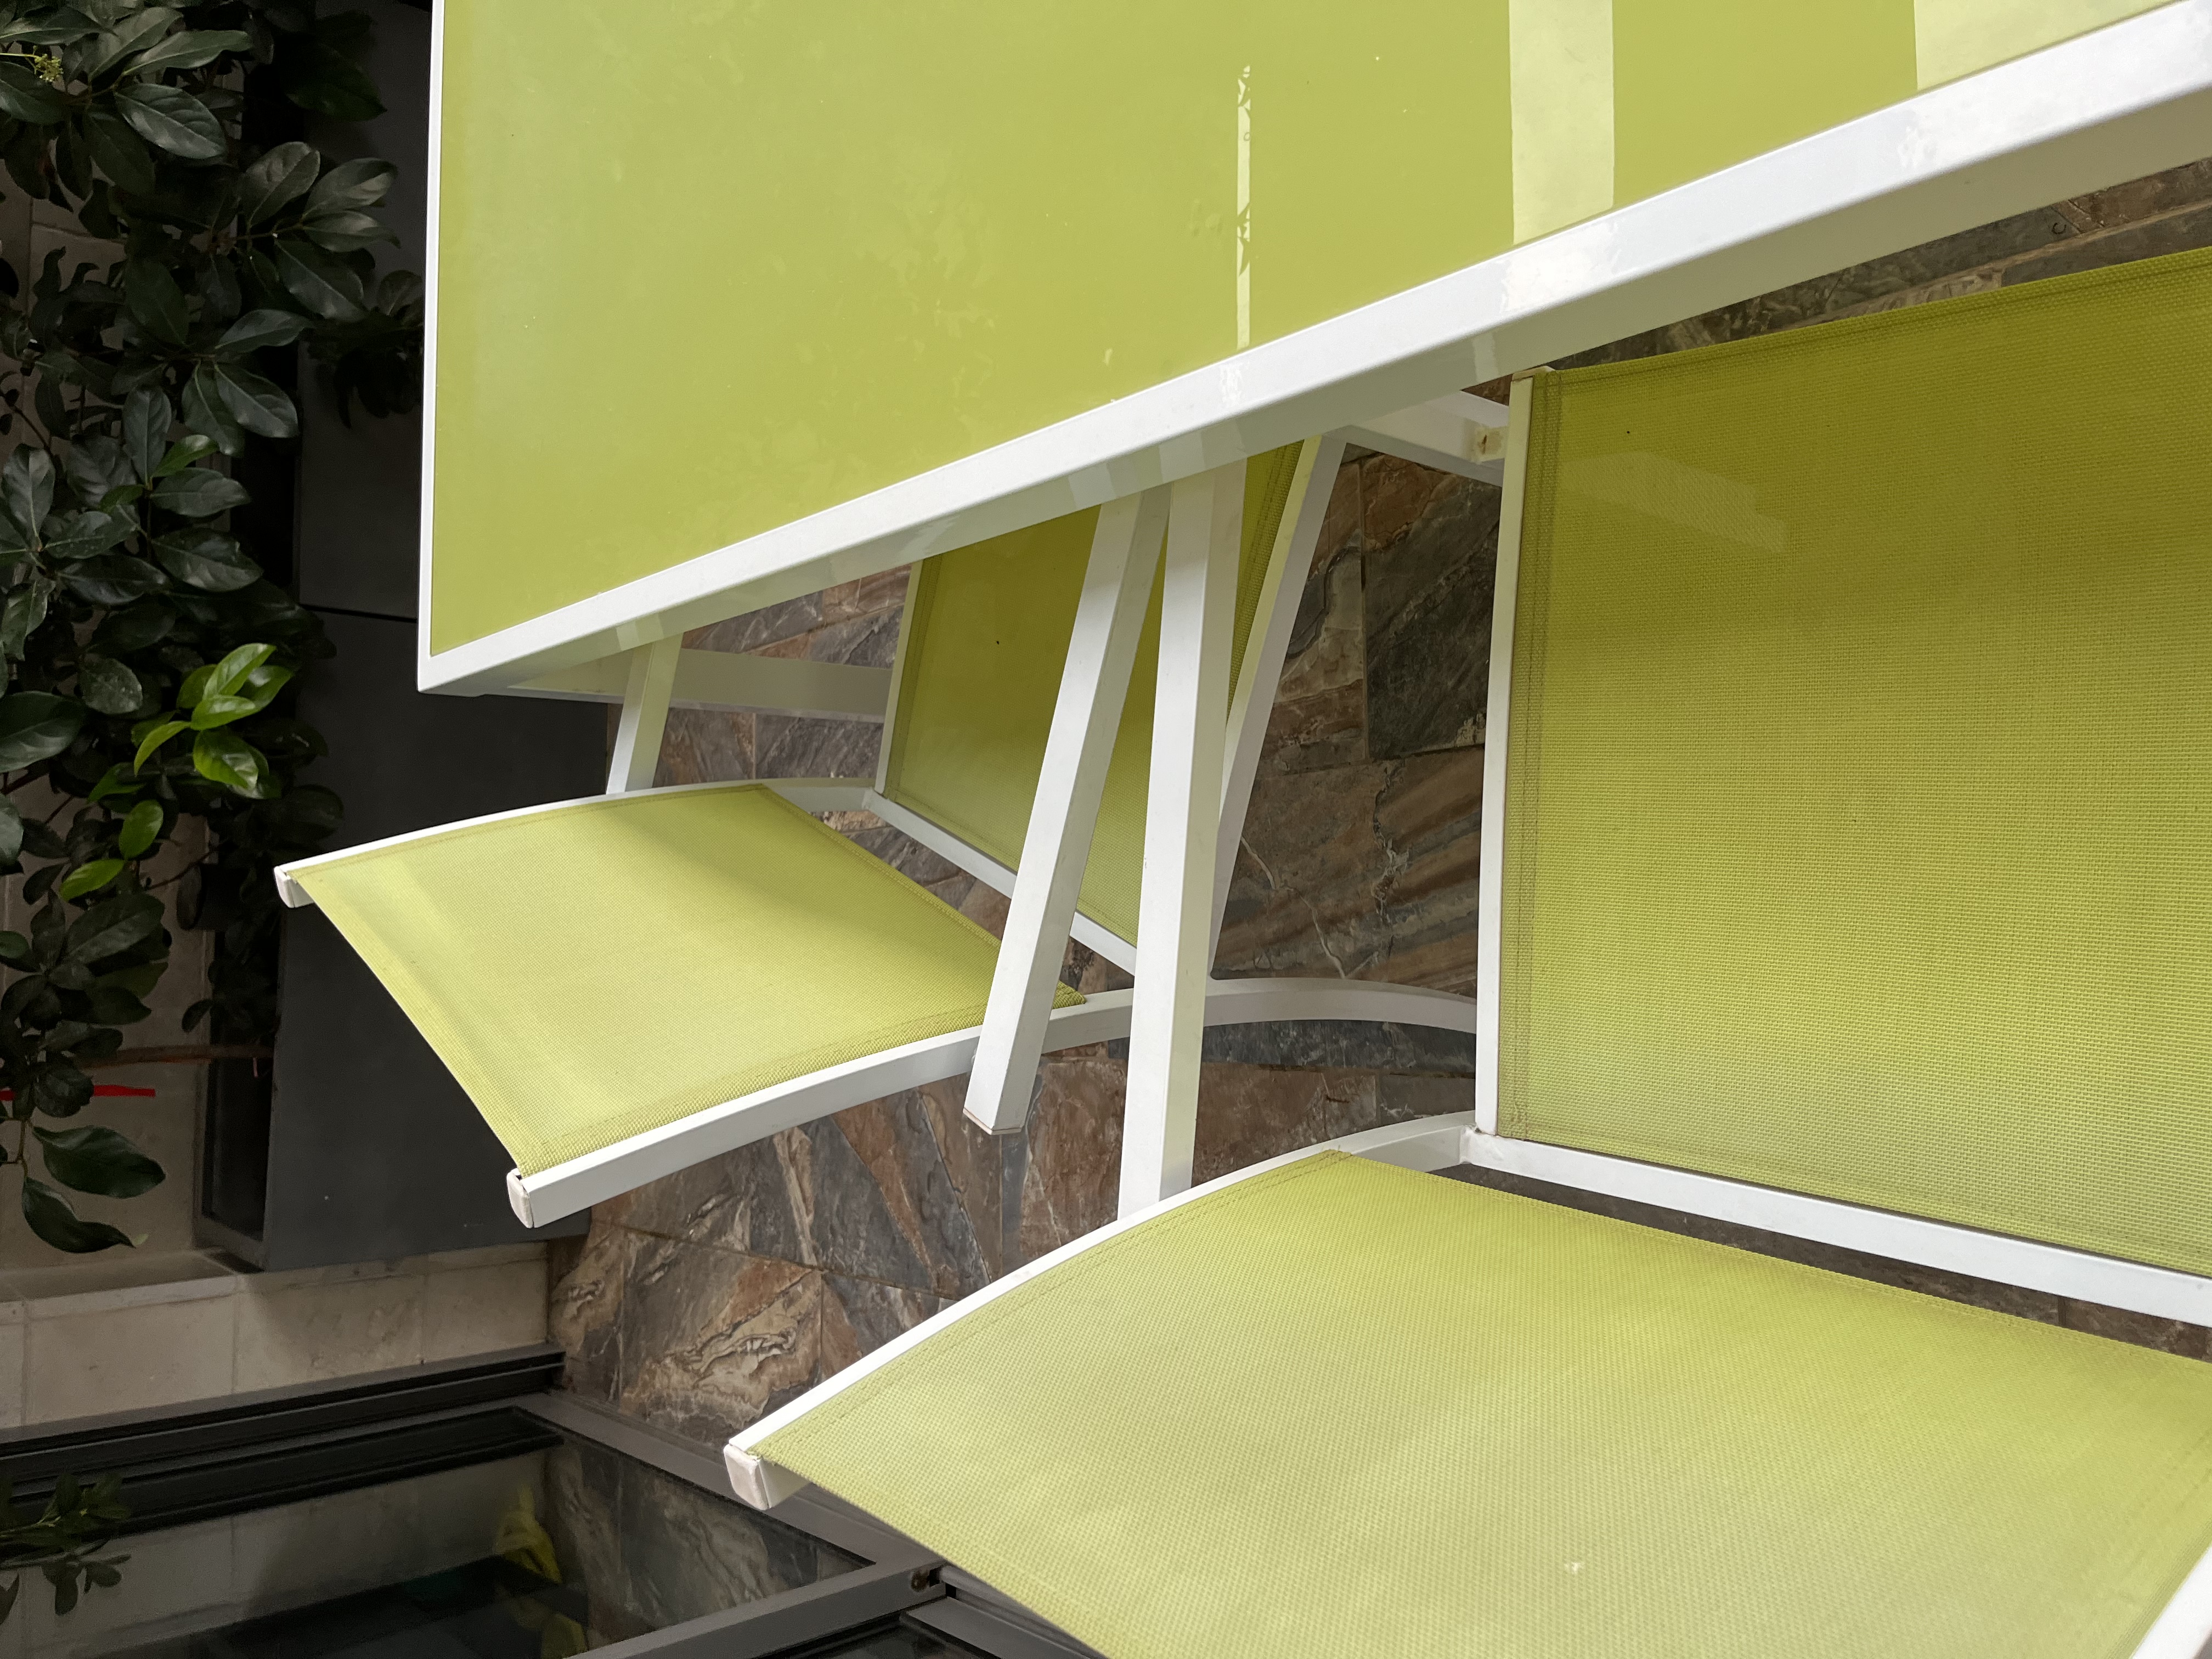 תמונה 2 ,שולחן עם 4 כסאות במצב טוב למכירה בכפרסבא הירוקה לגינה  ריהוט לגינה